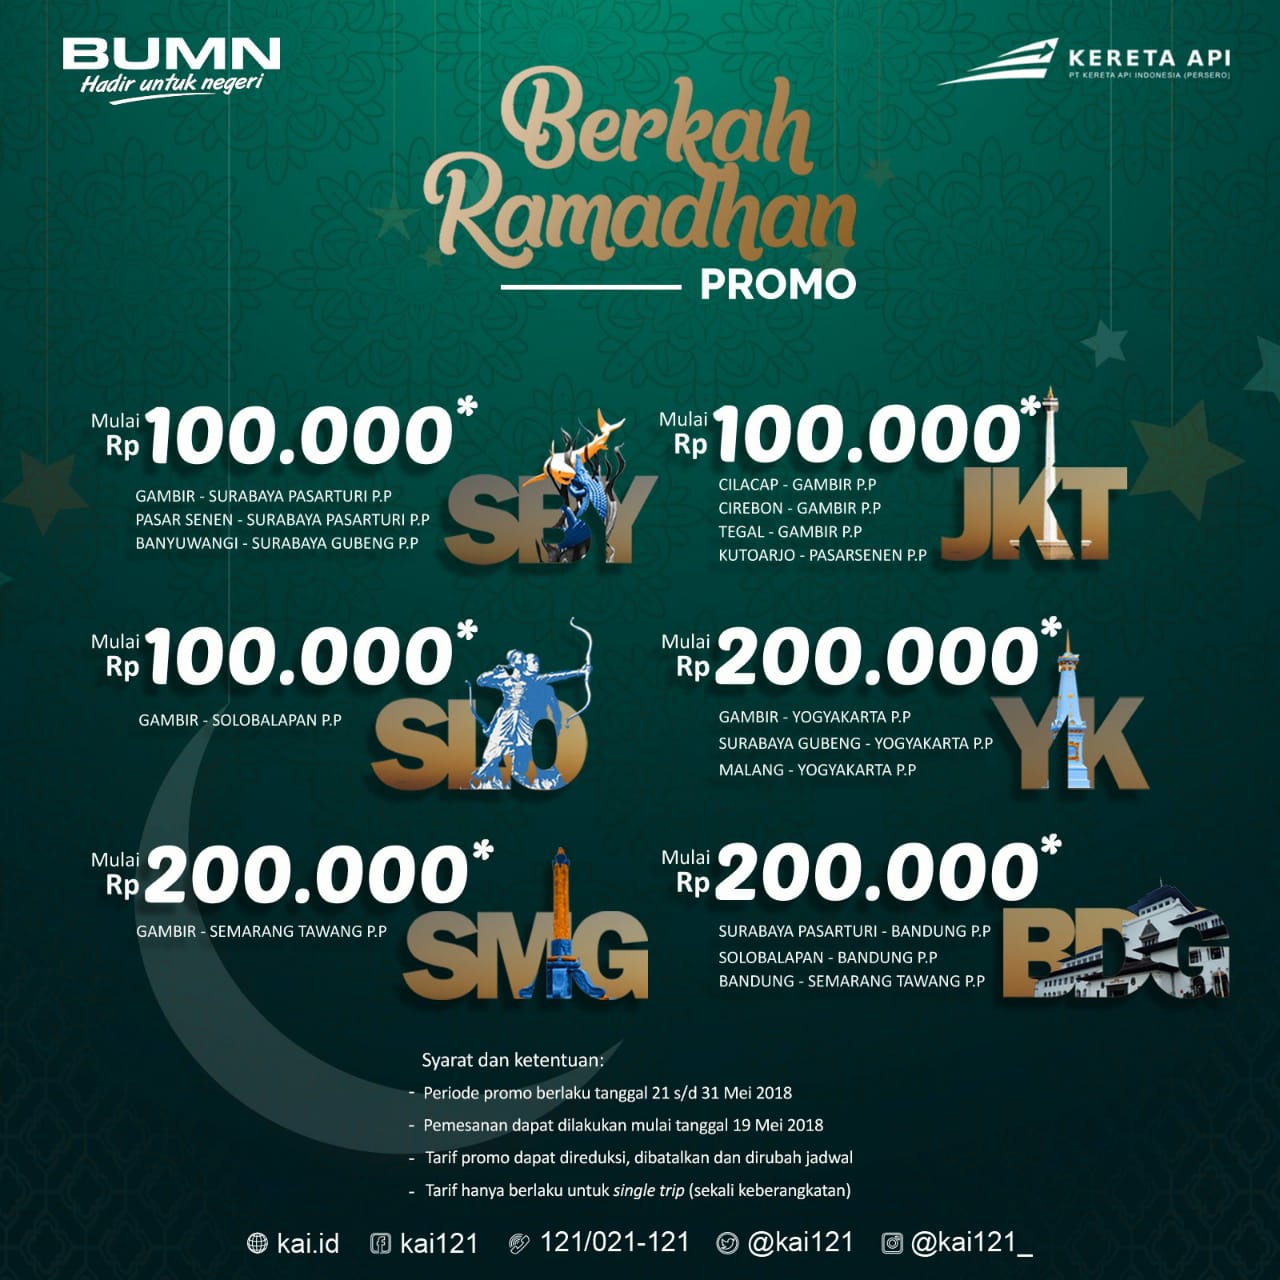 Berkah Ramadhan Promo  CAKRUK